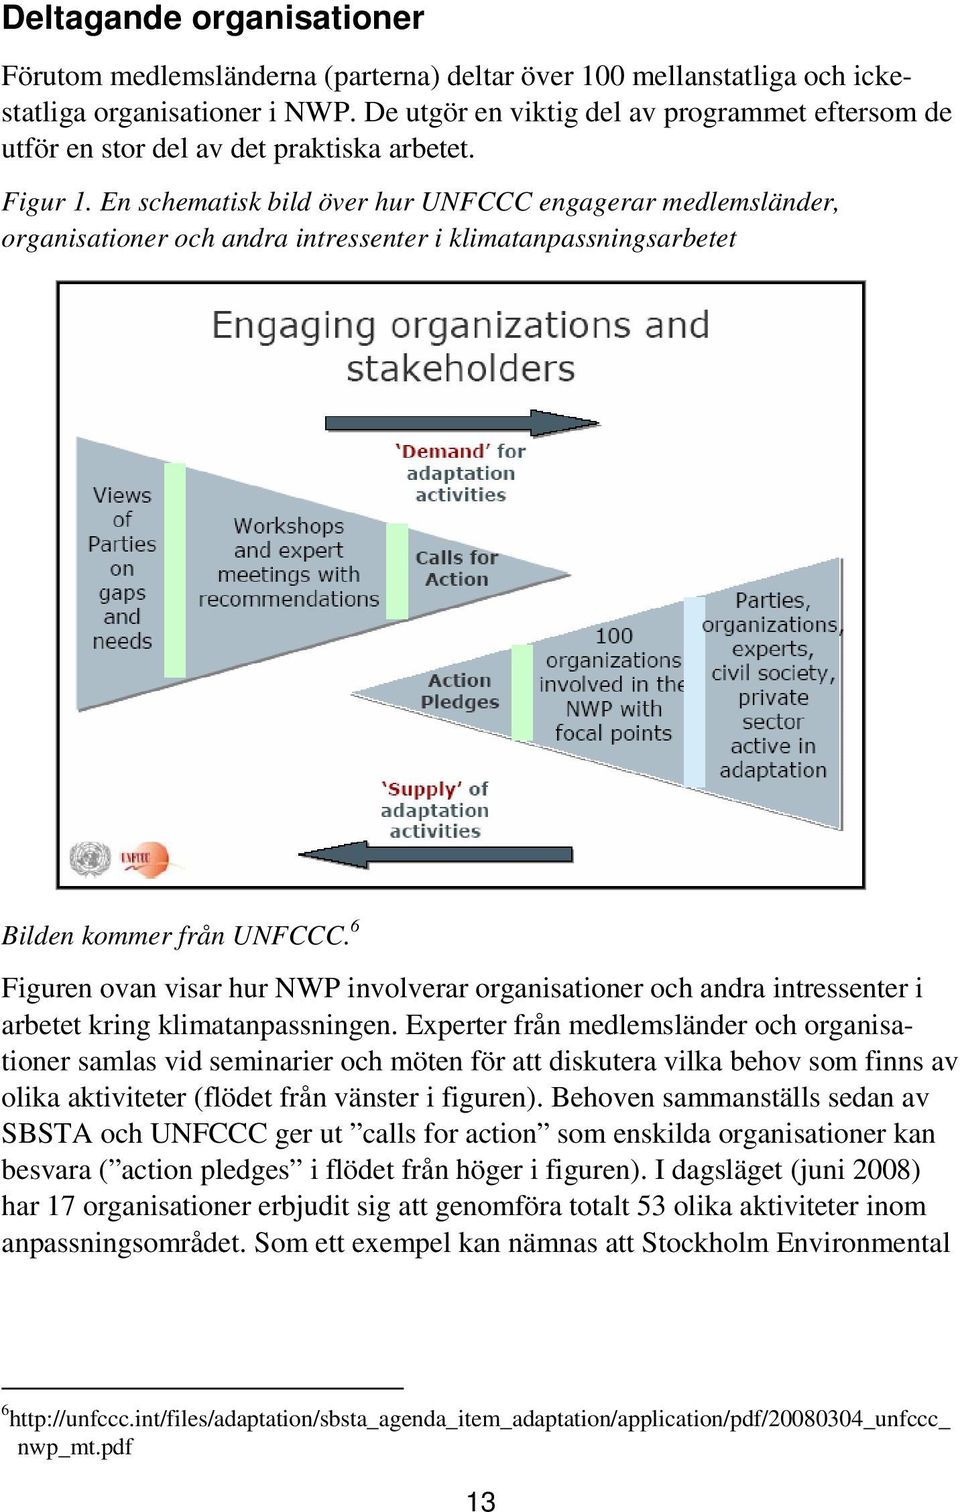 En schematisk bild över hur UNFCCC engagerar medlemsländer, organisationer och andra intressenter i klimatanpassningsarbetet Bilden kommer från UNFCCC.